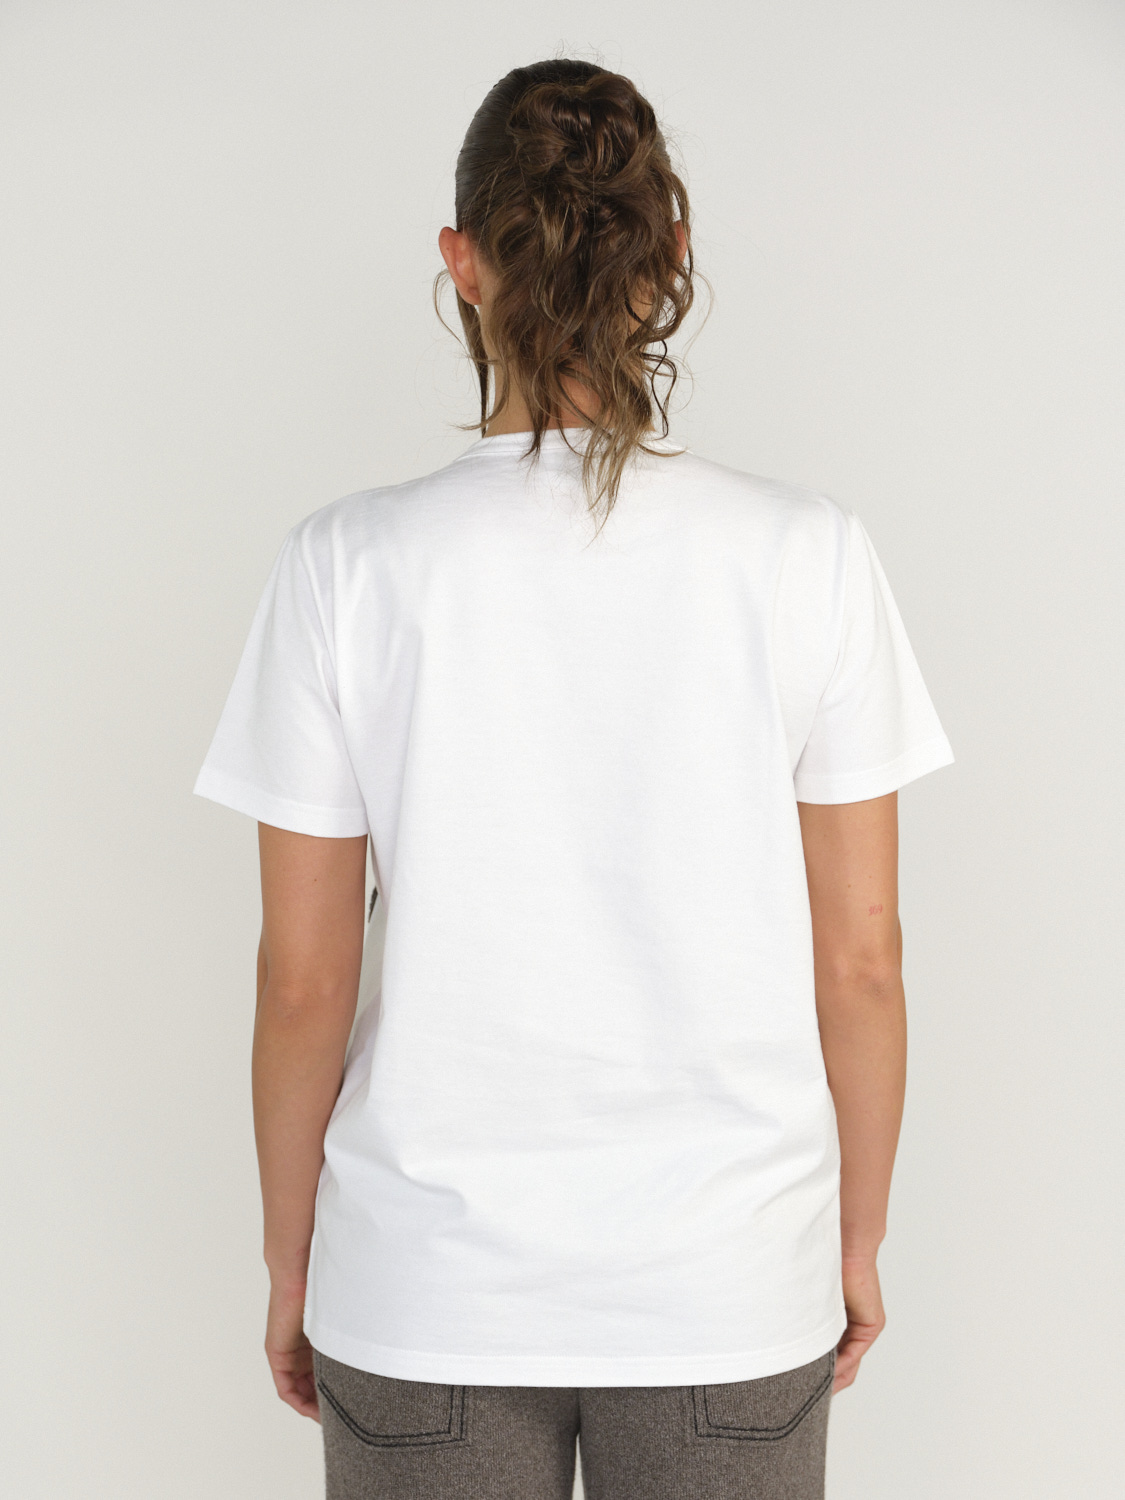 Barrie Barrie – Thistle - Barrie – Thistle - T-Shirt mit Kaschmir-Applikation beige XS